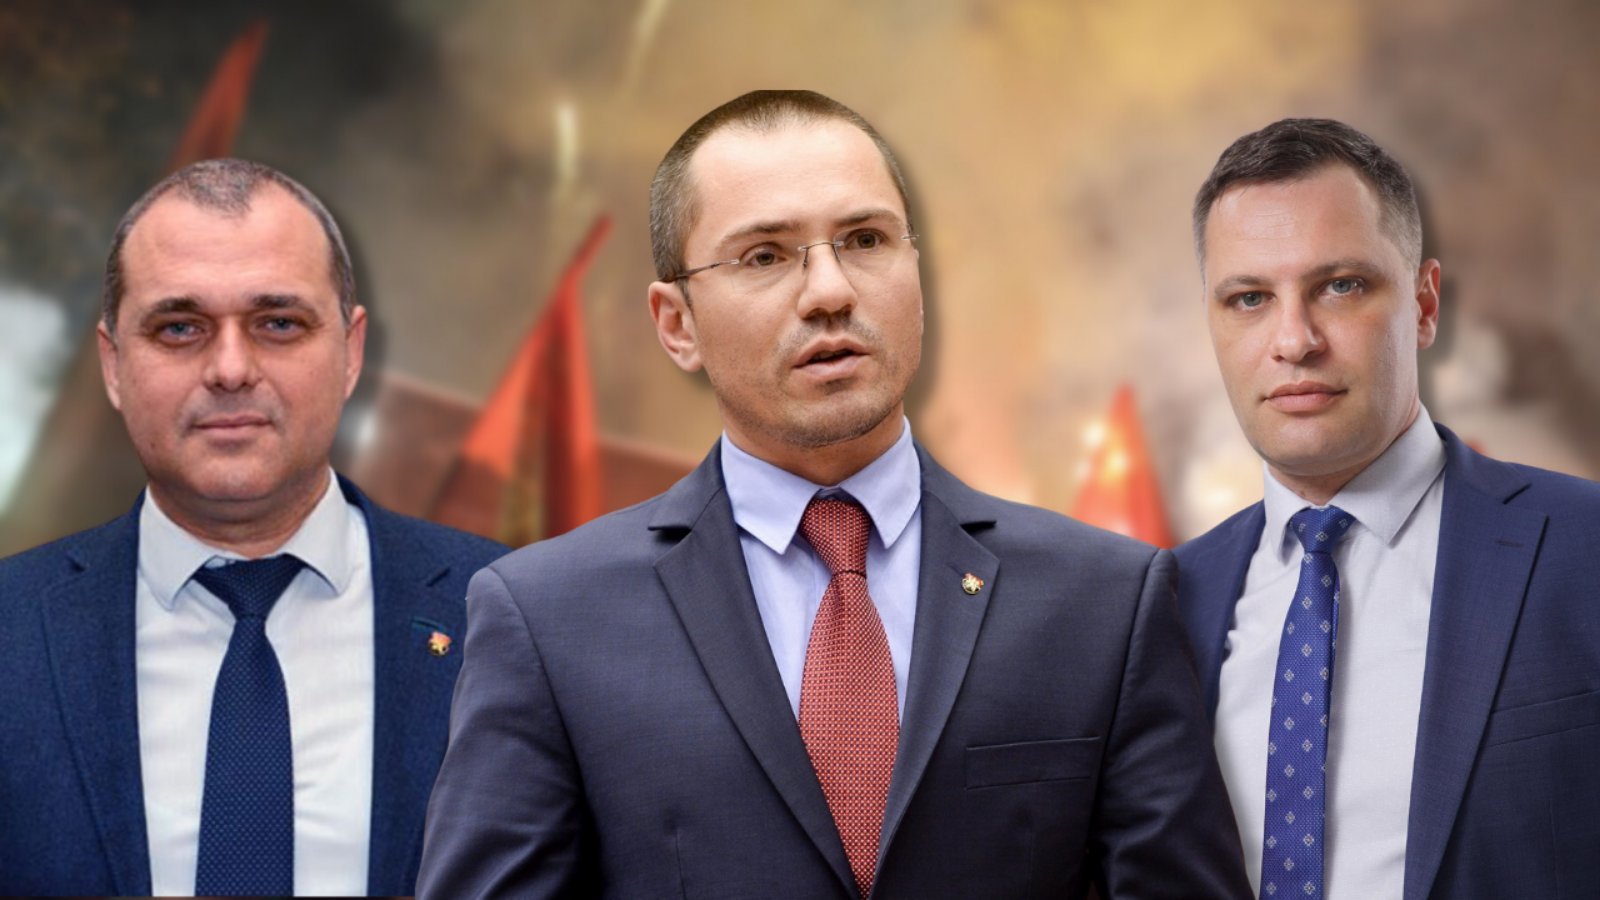 ВМРО има ново ръководство.
Трима съпредседатели ще ръководят организацията. Това са